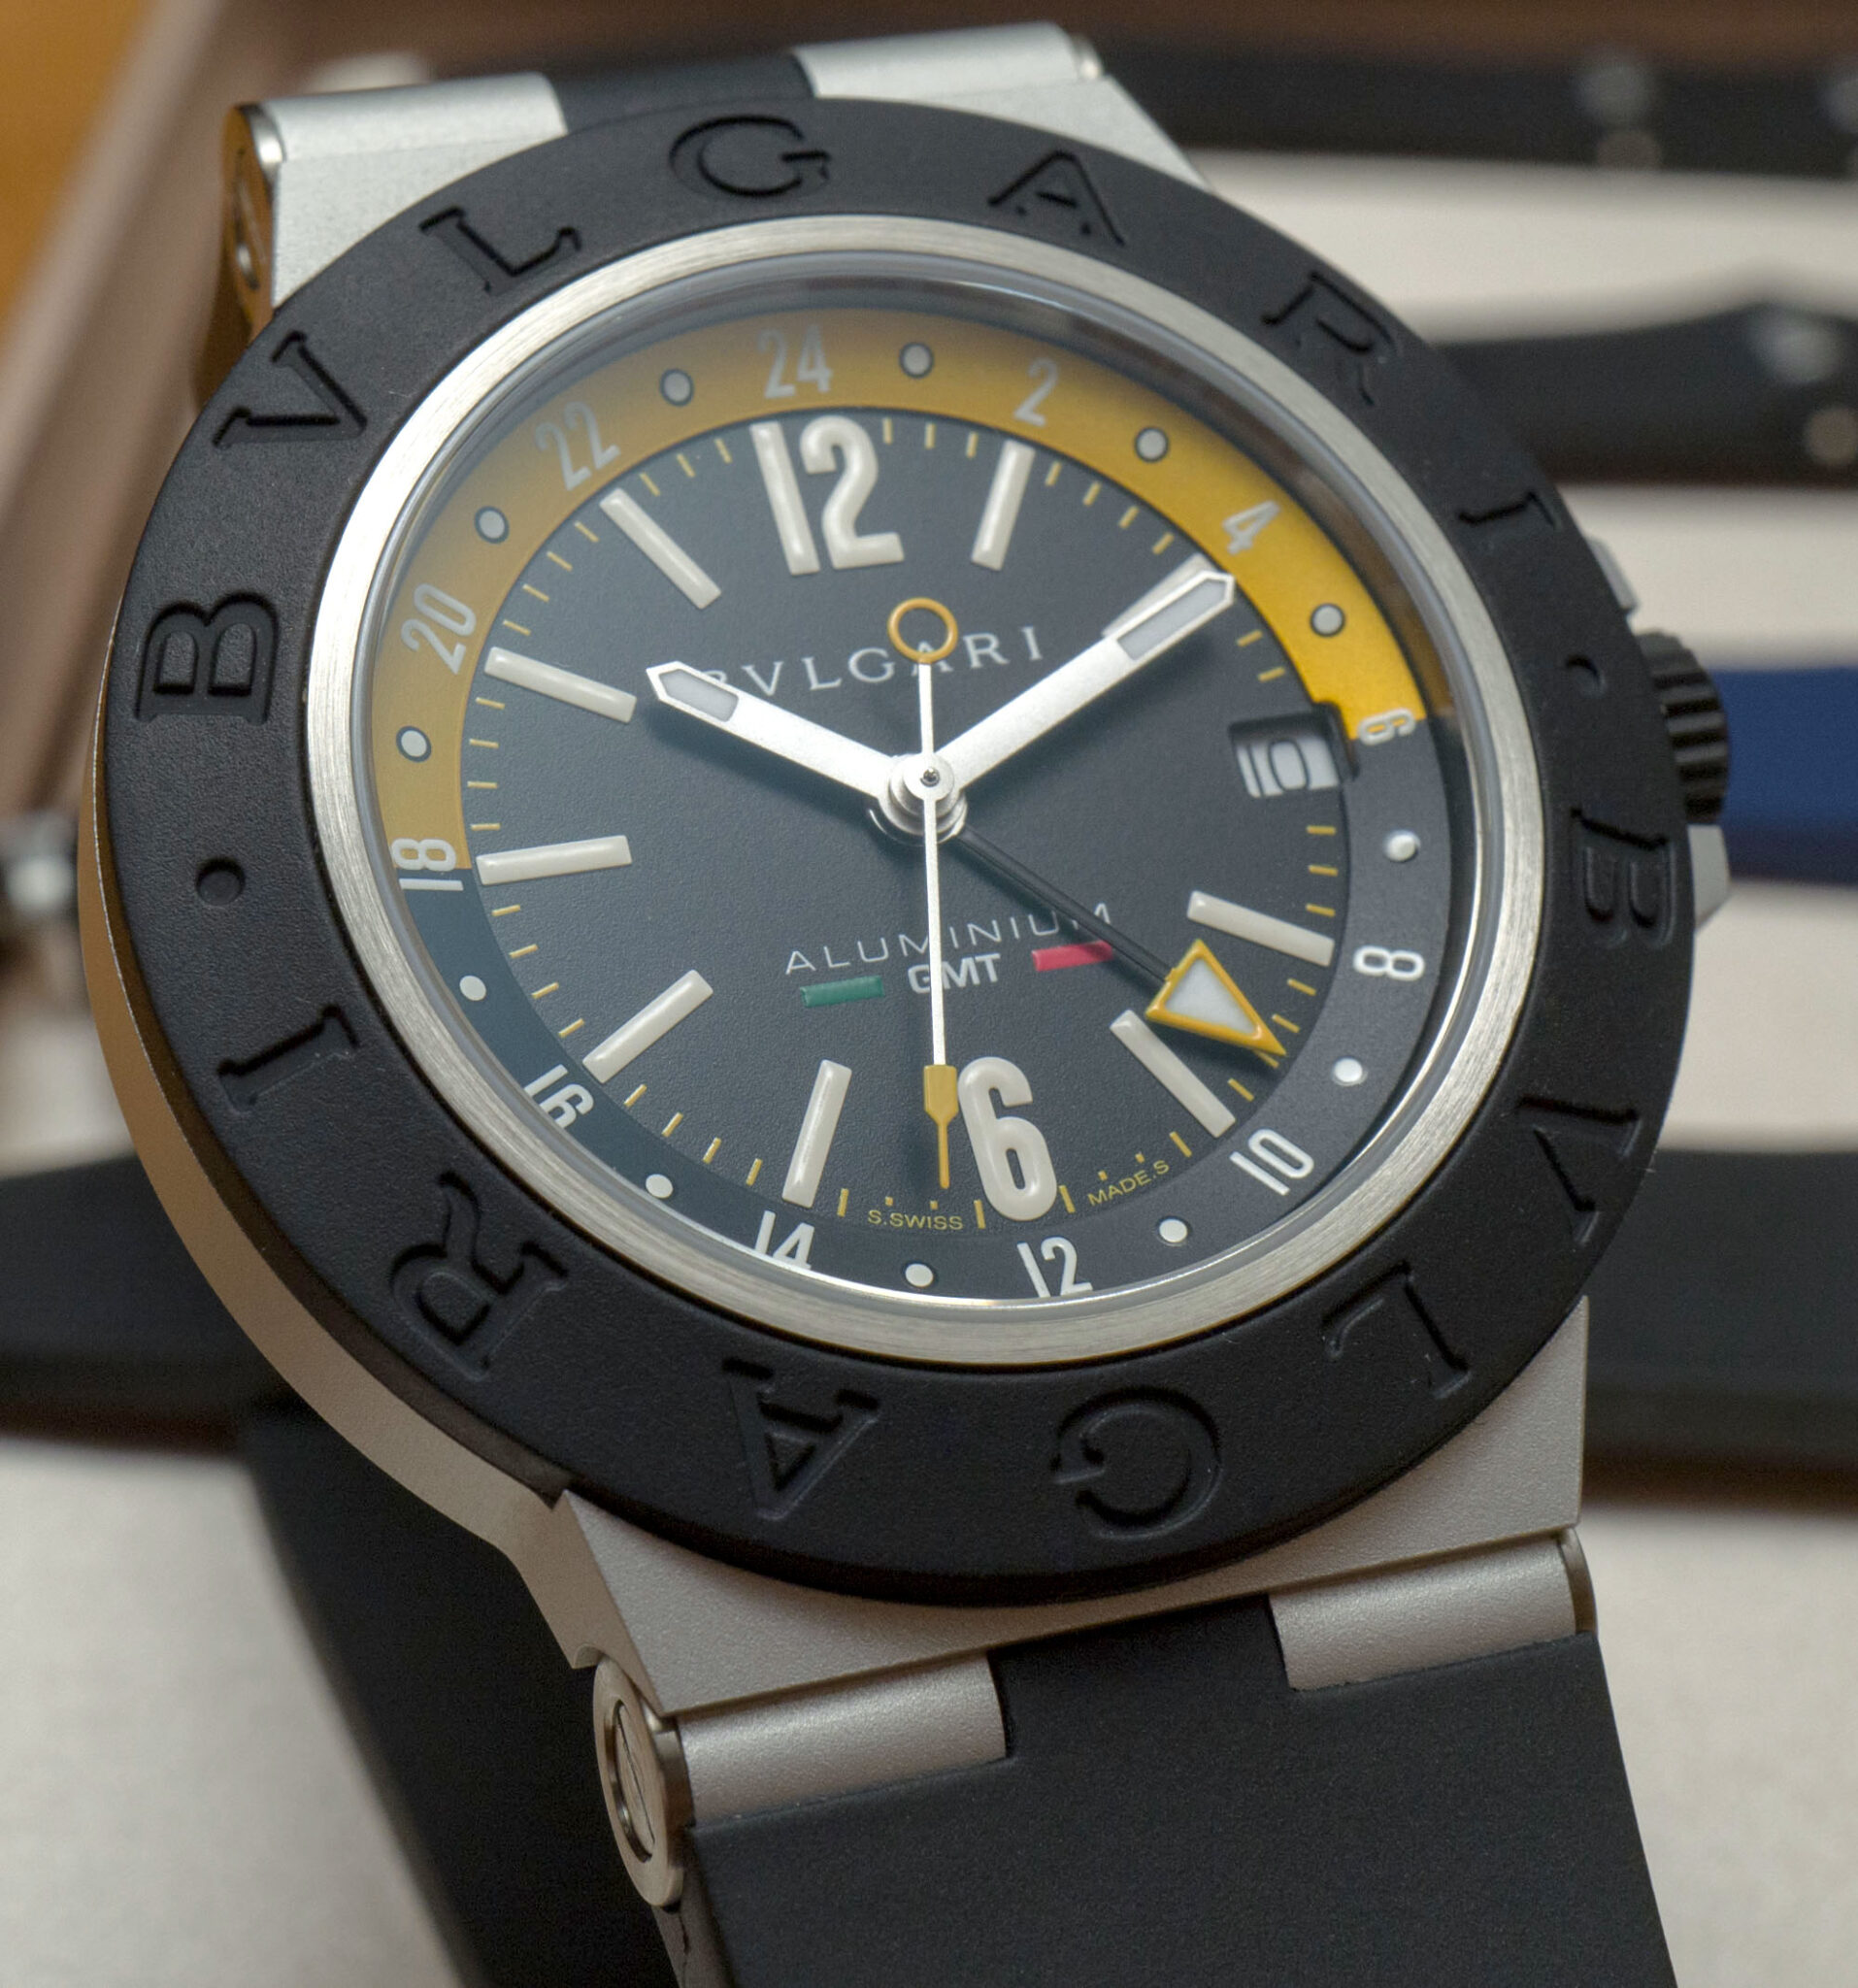 Hands-On: Bulgari Aluminium GMT Amerigo Vespucci Special Edition Watch ...